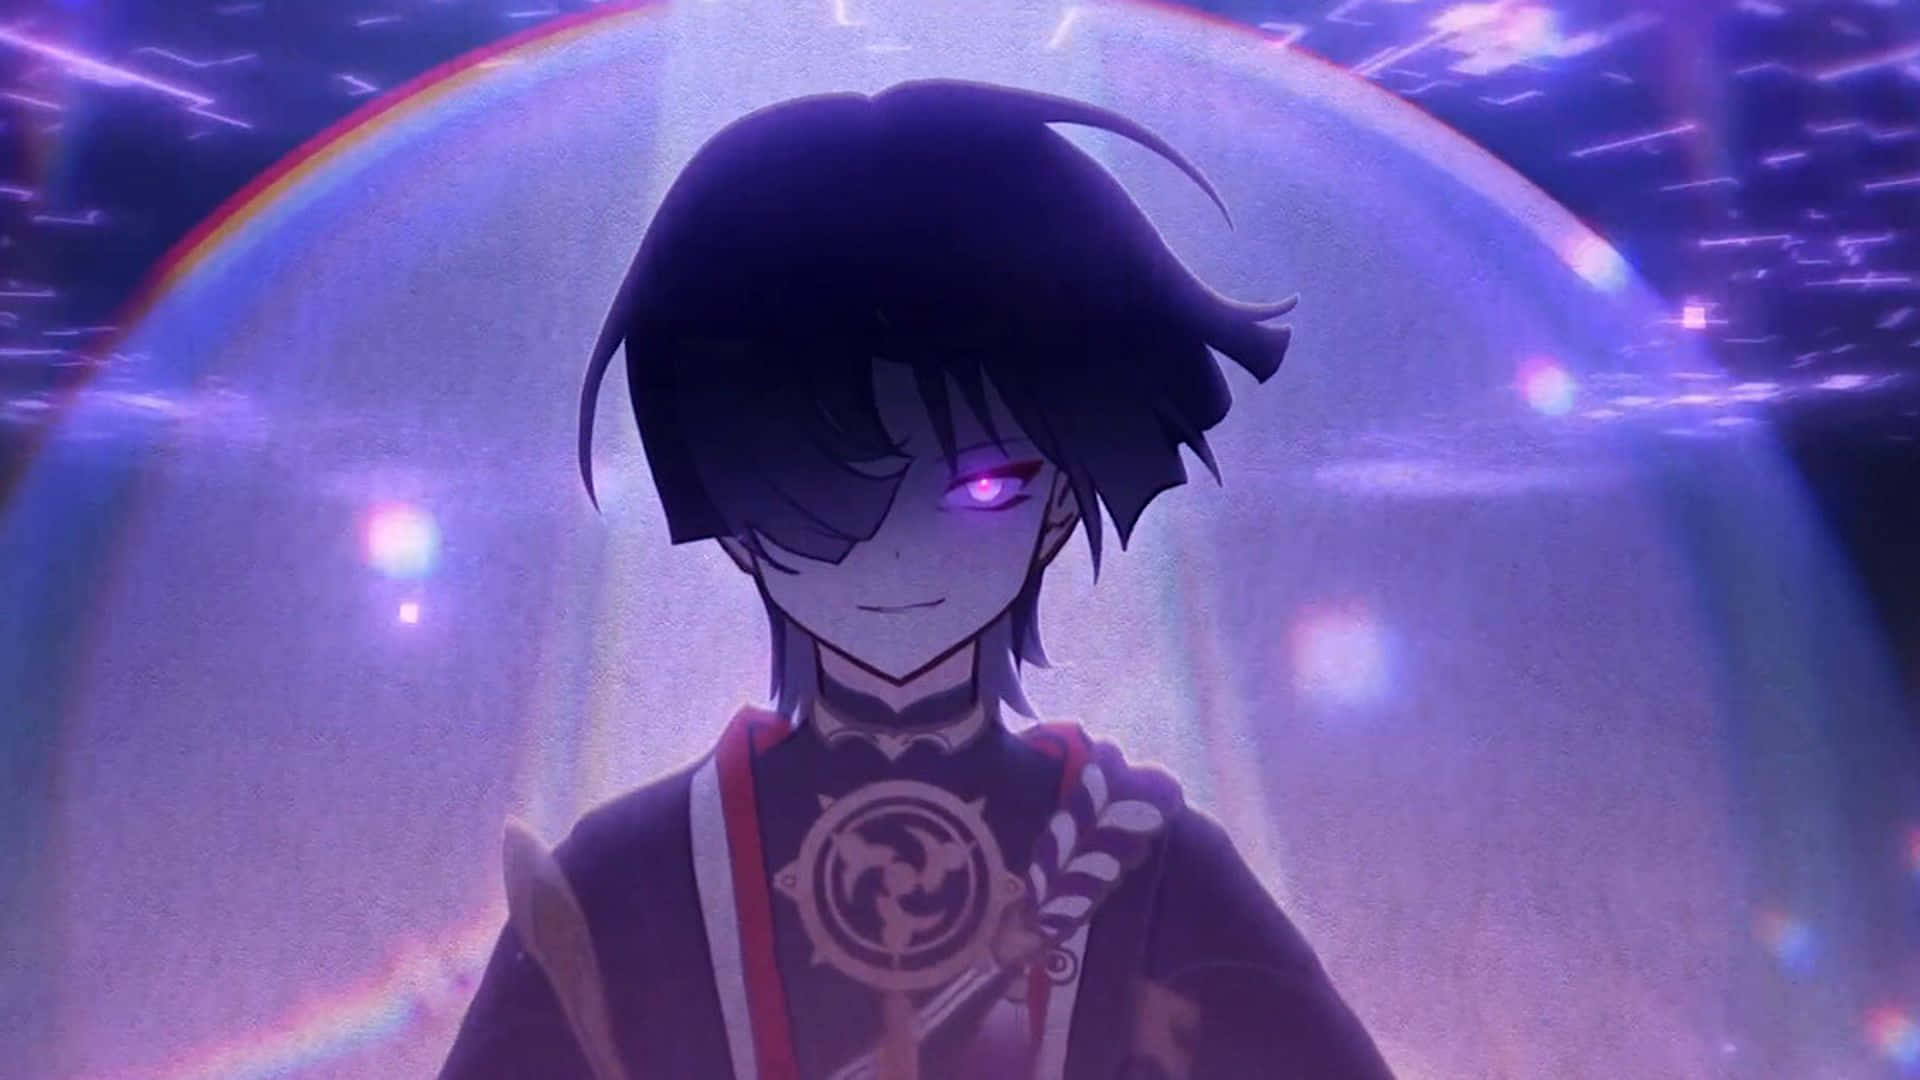 En dreng i en anime med lilla øjne og et sværd. Wallpaper